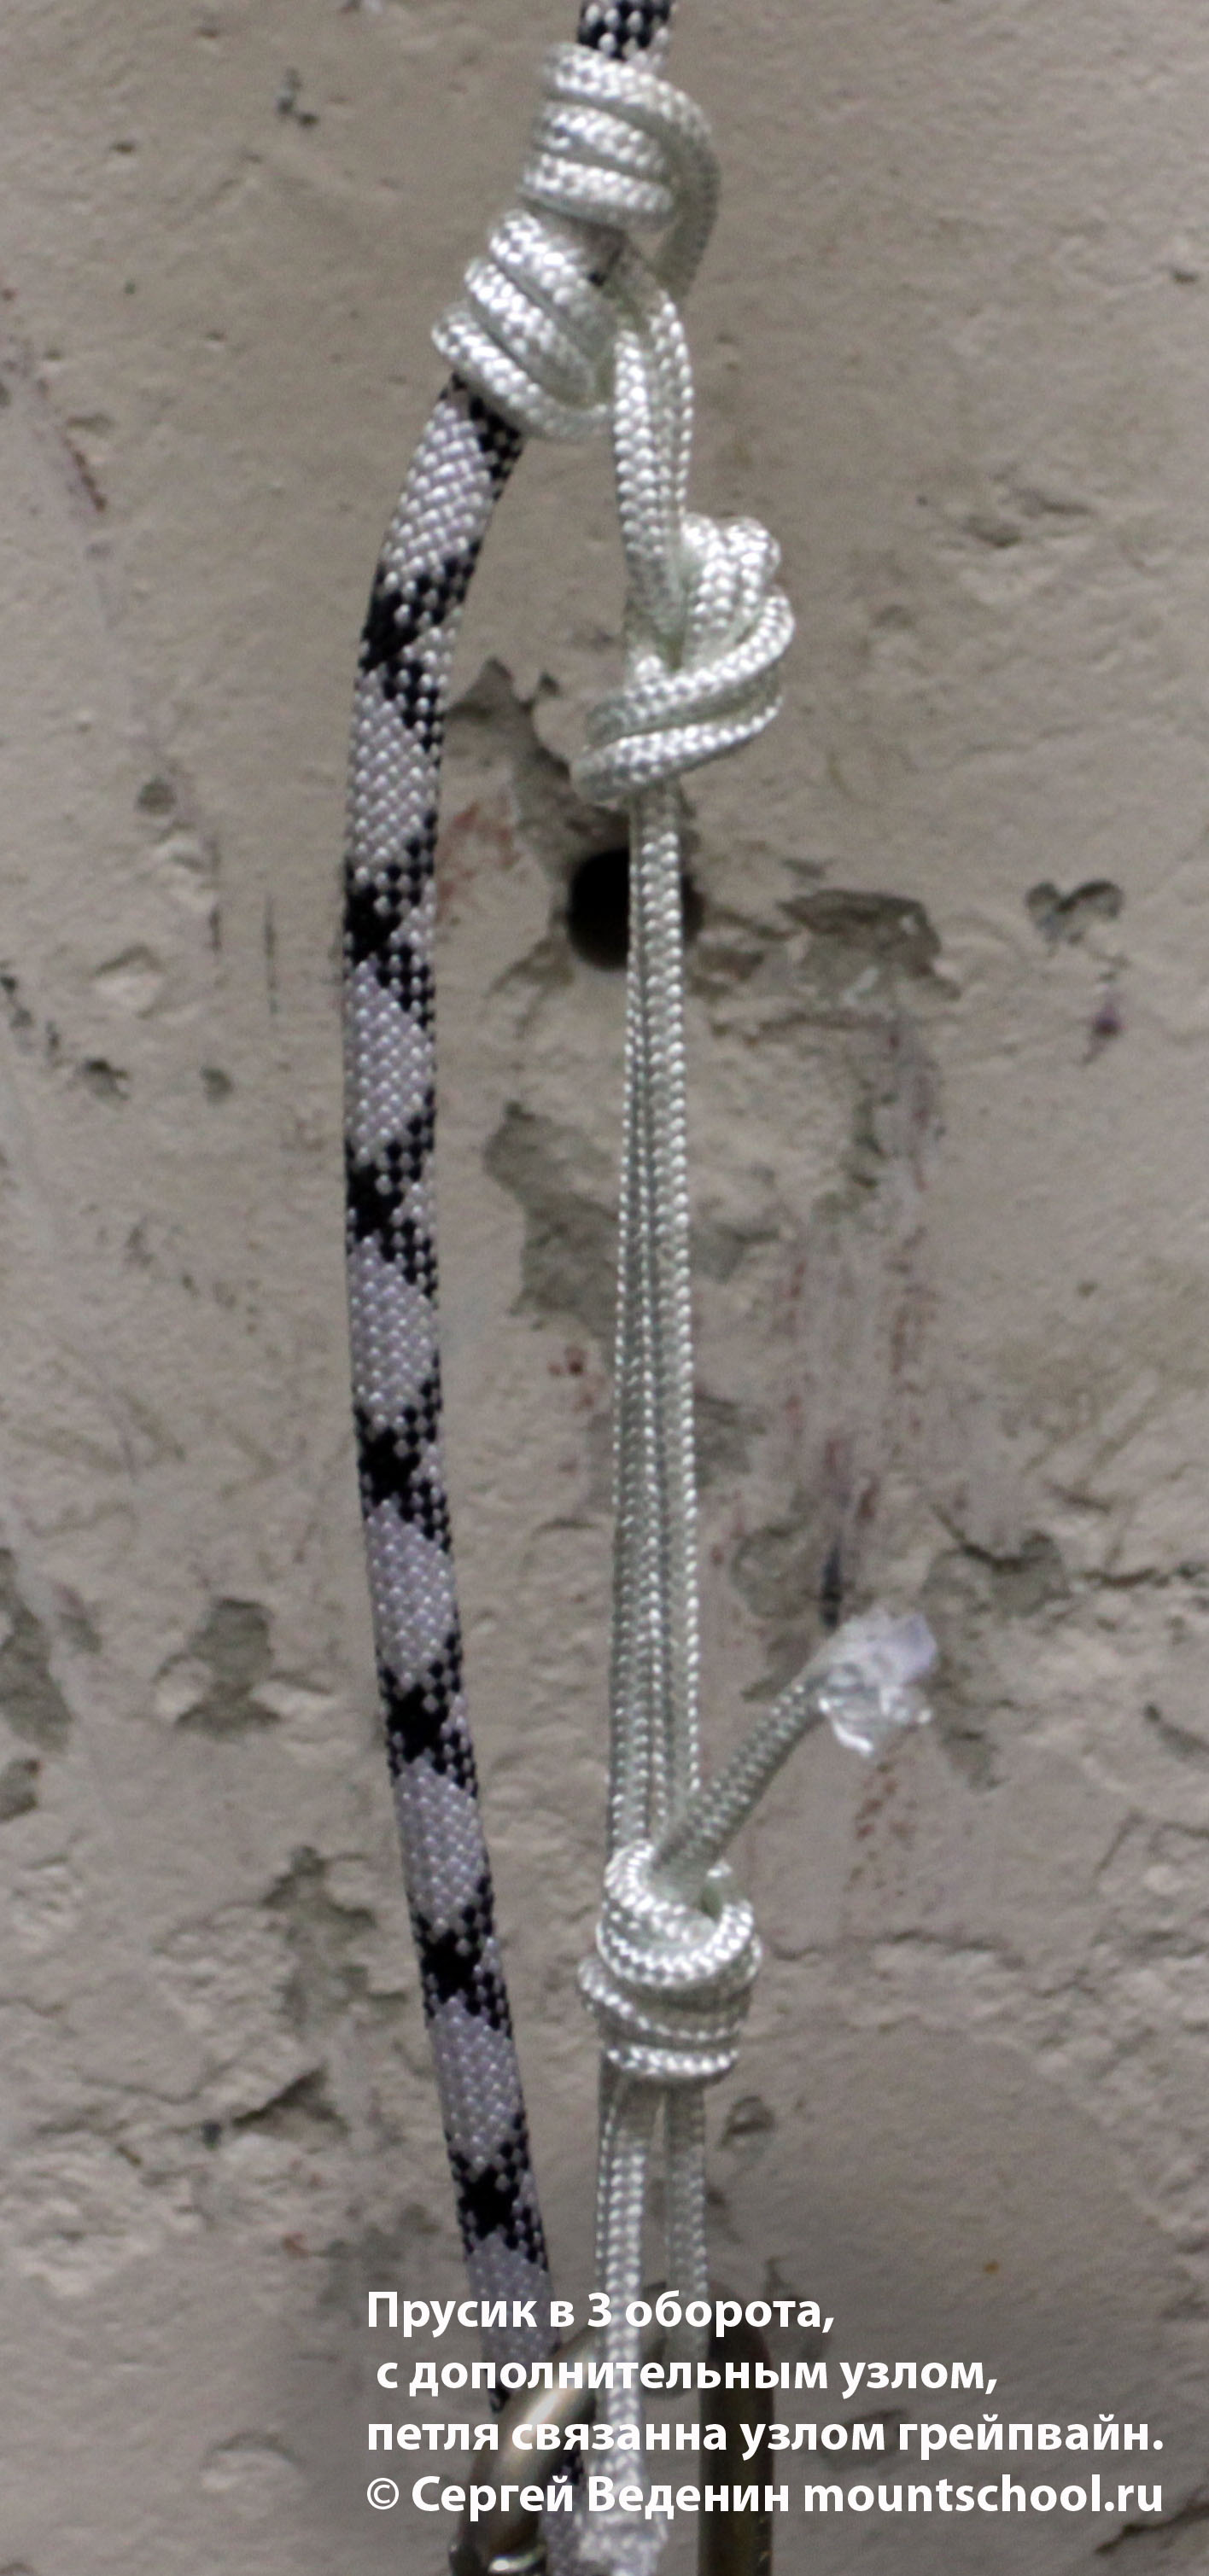 Схватывающий узел Прусик, петля завязана узлом грейпвайн, плюс дополнительный узел